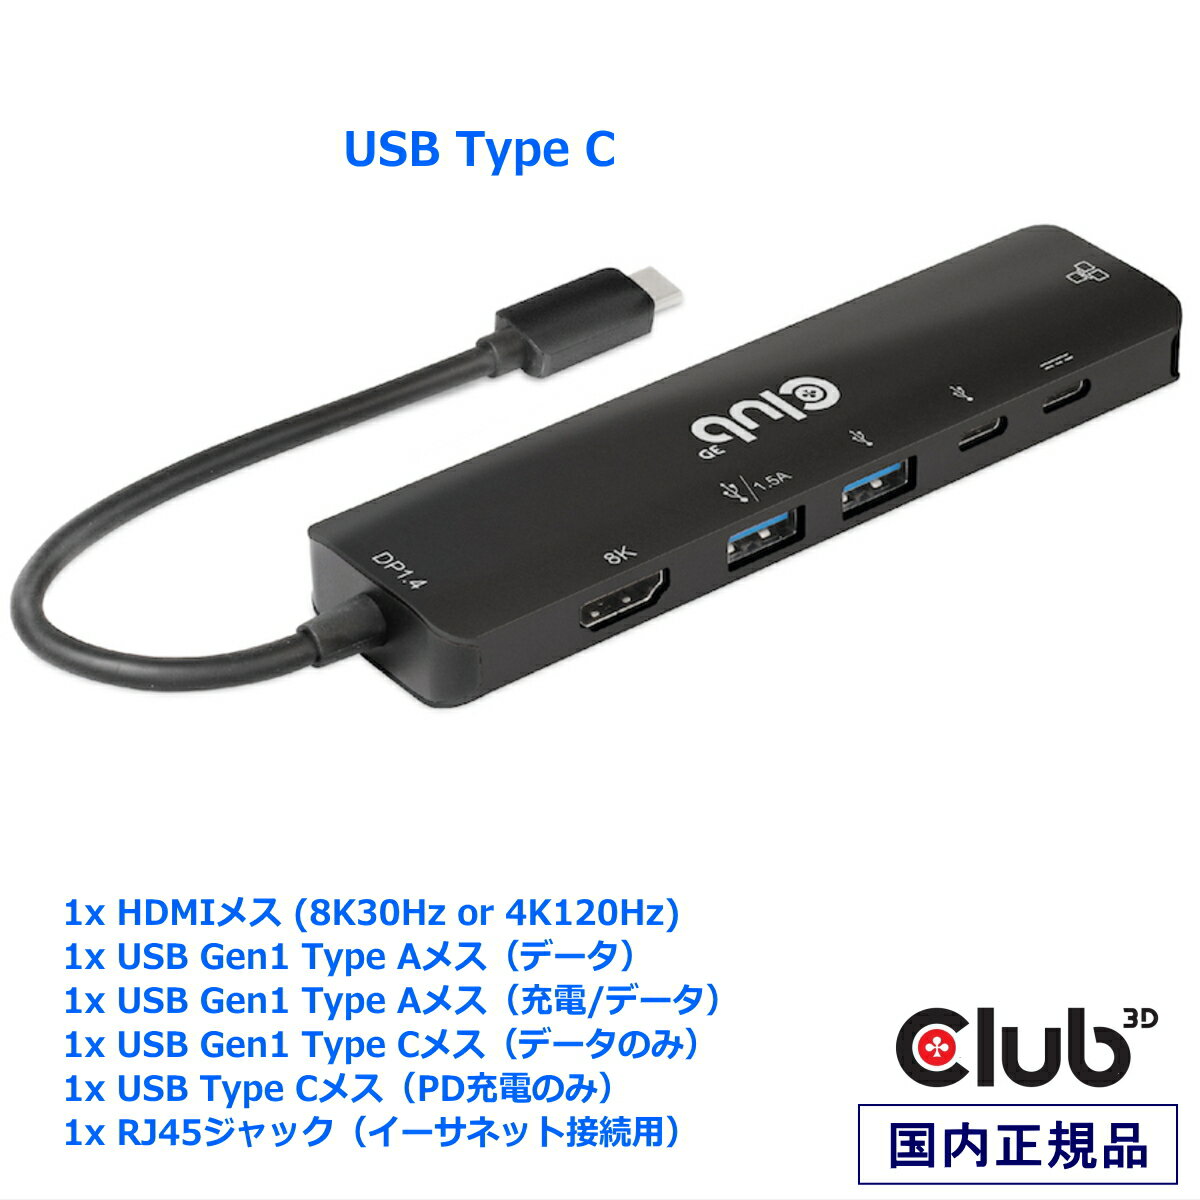 国内正規品 Club 3D USB Gen1 Type-C ドッキングステーション 6-in-1 ハブ HDMI 8K30Hz 4K120Hz / 2x USB-A / RJ45 ギガビットイーサネット / USB-C 5Gbps / USB-C PD3.0 100W (CSV-1596)